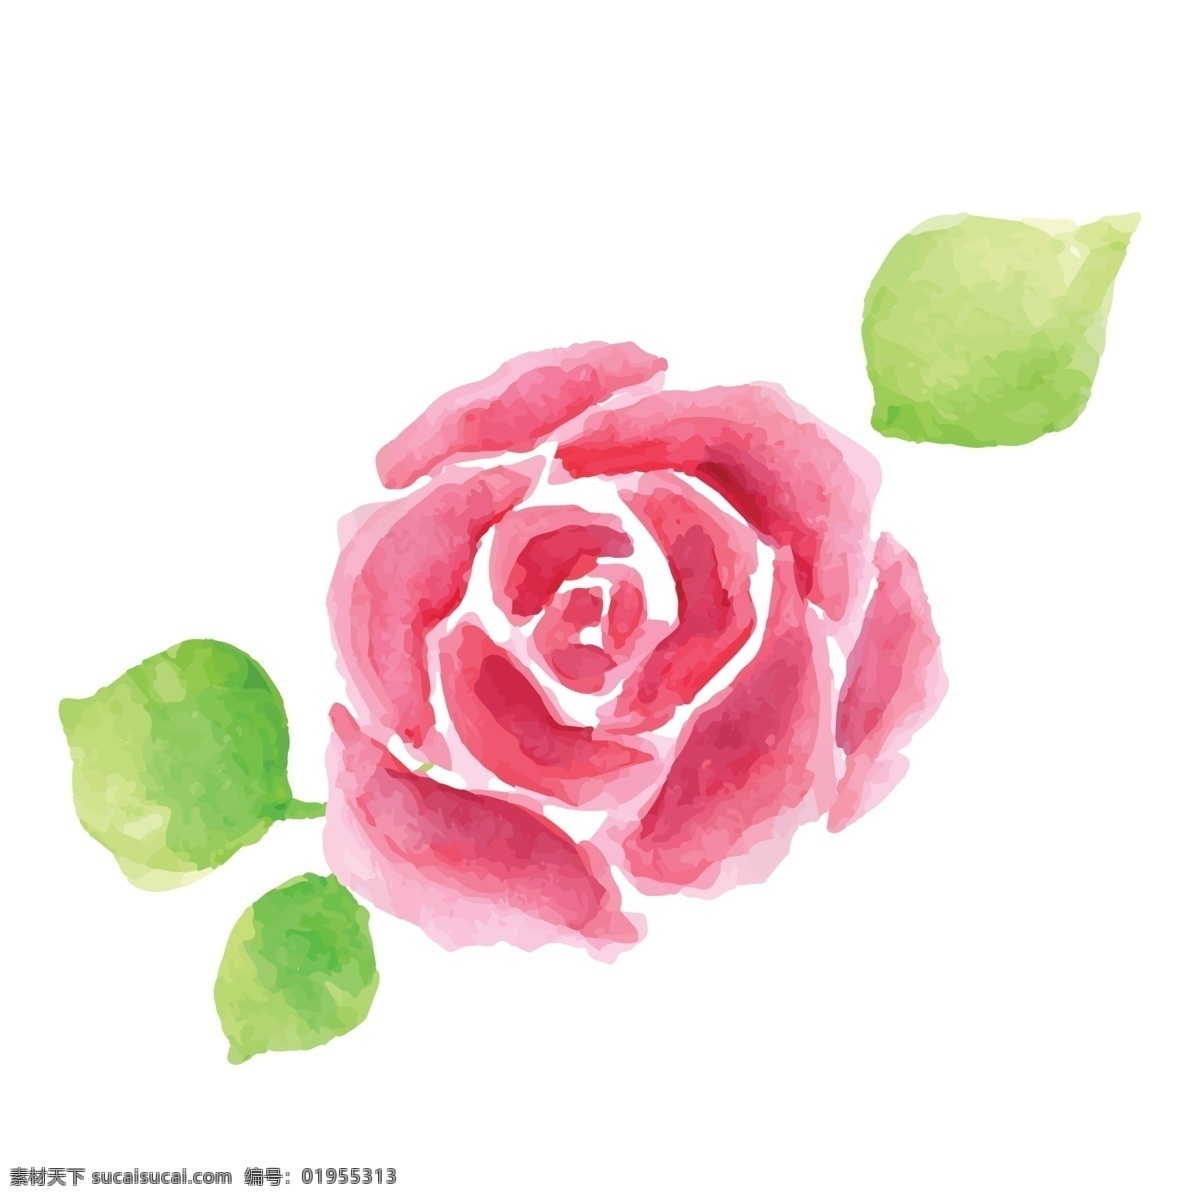 卡通 红色 玫瑰 花朵 免 抠 图 玫瑰花 绿色叶子 带刺的玫瑰 卡通玫瑰 仿真